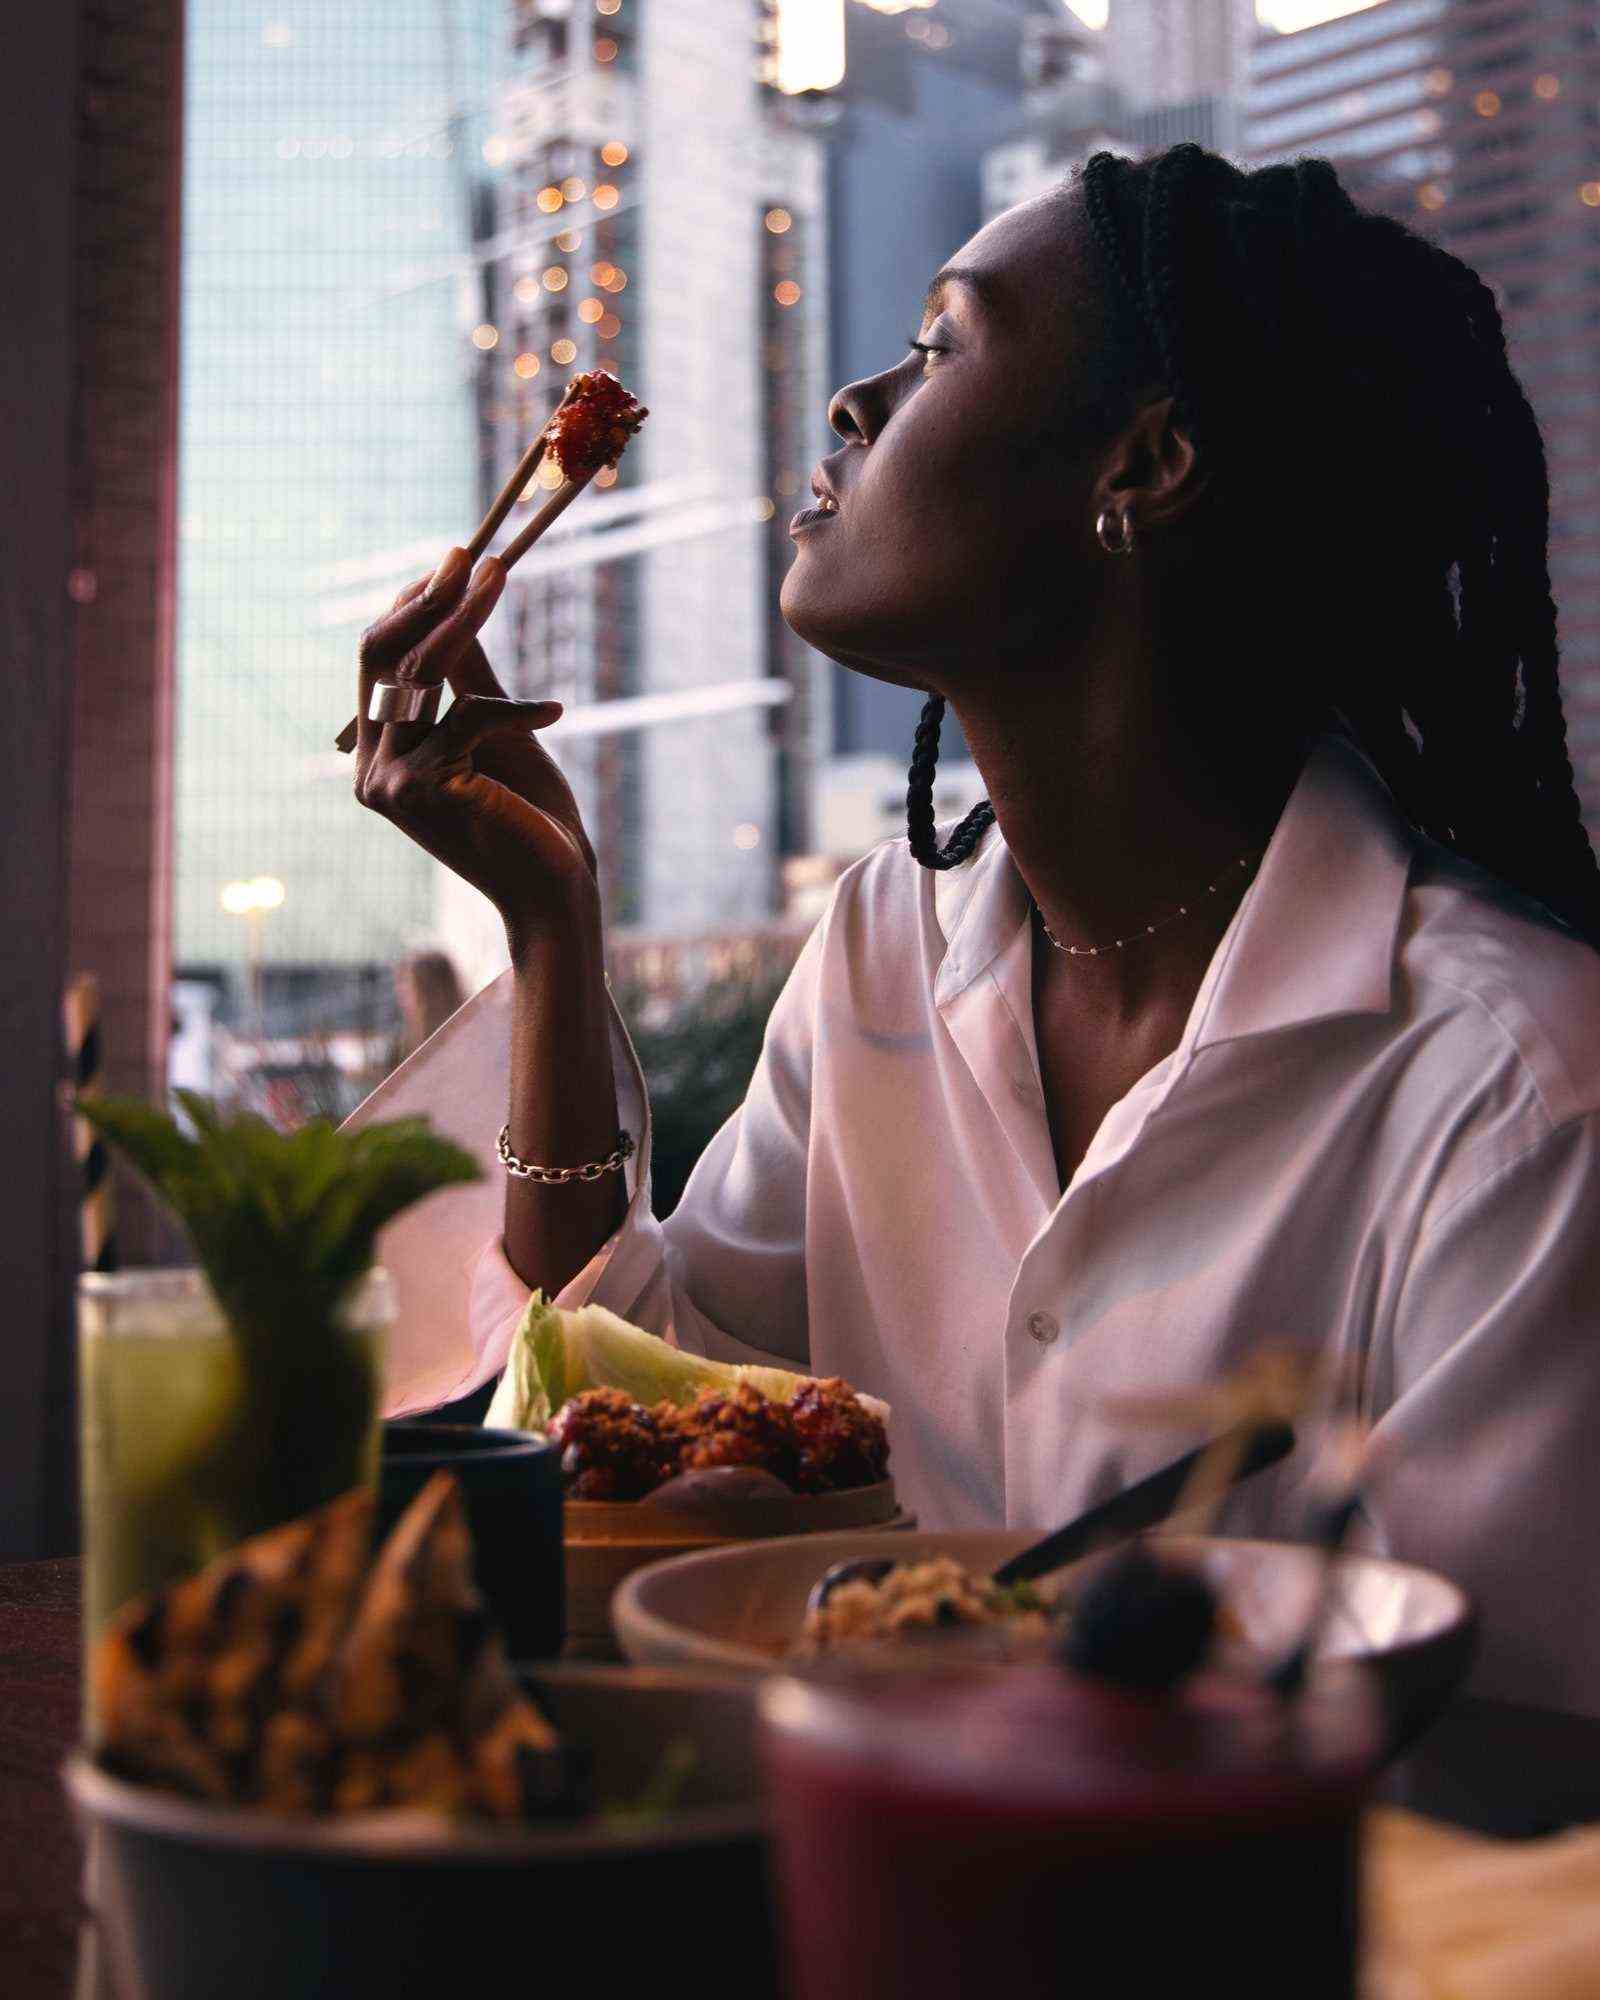 Eine Person schaut aus dem Fenster, während sie ein Stück Essen zwischen Stäbchen hält.